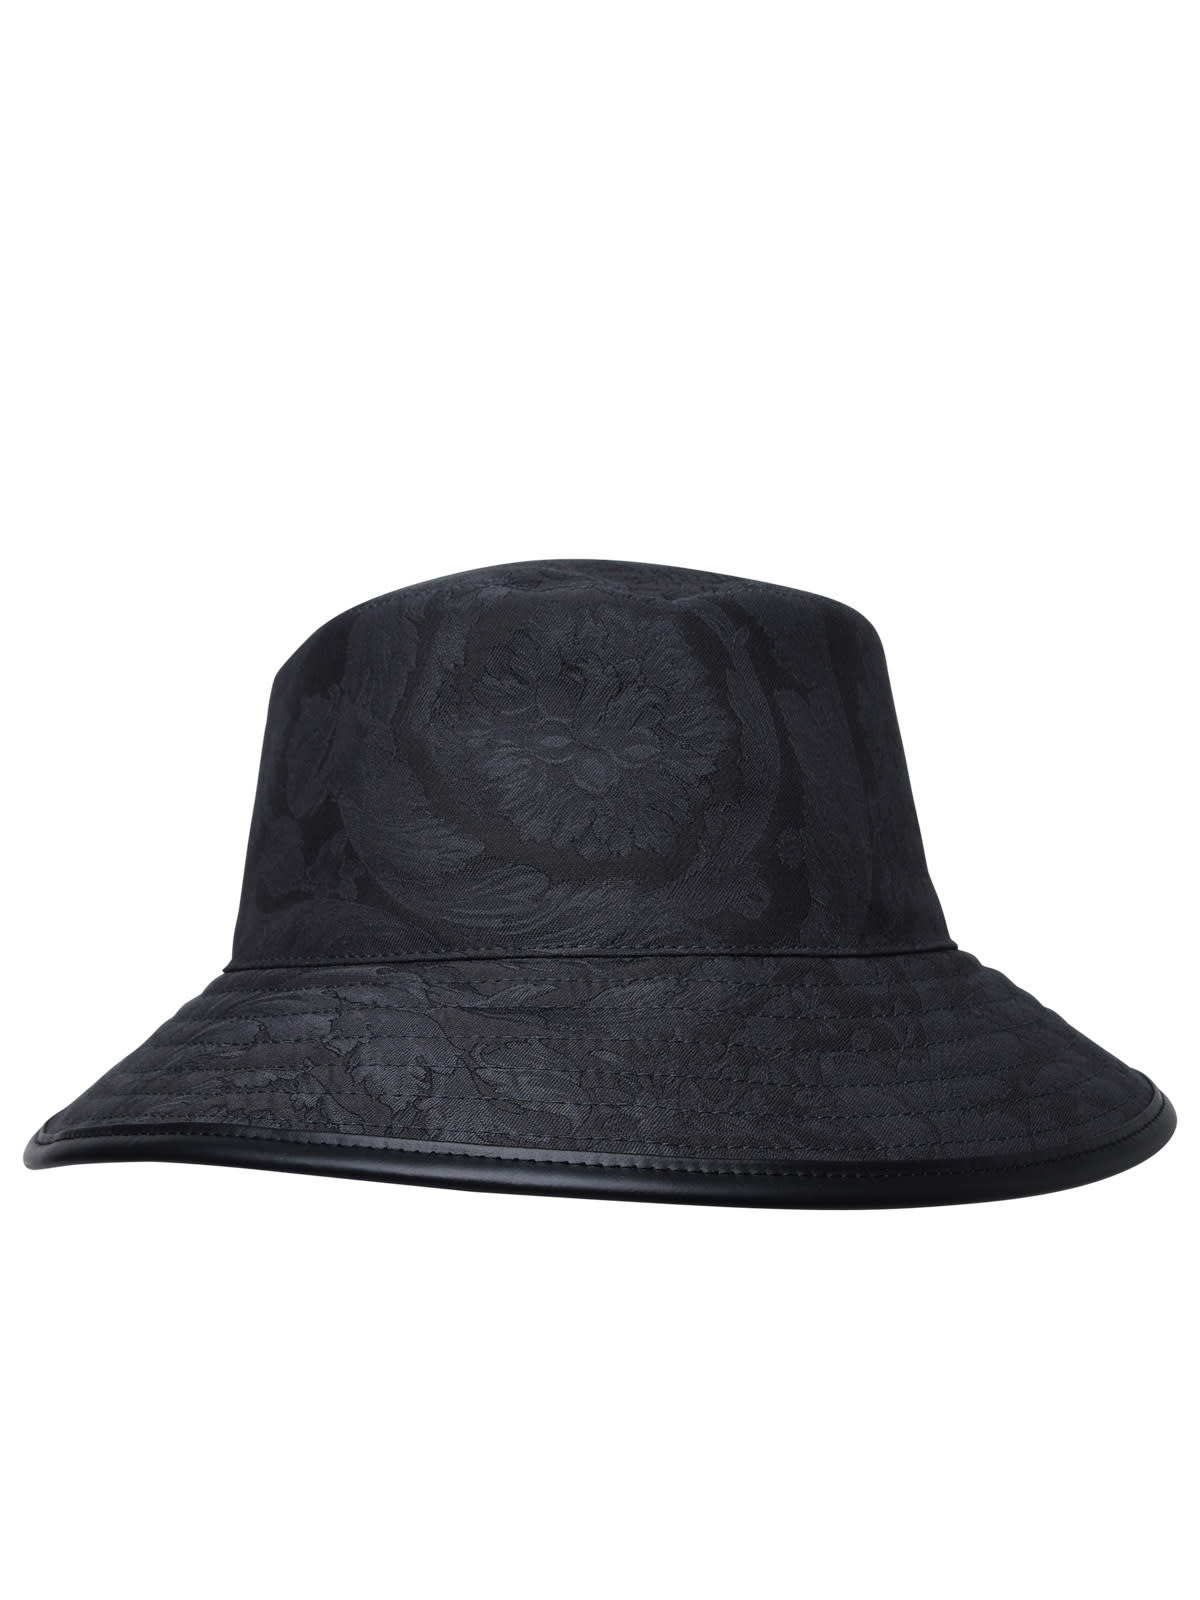 VERSACE BLACK COTTON HAT